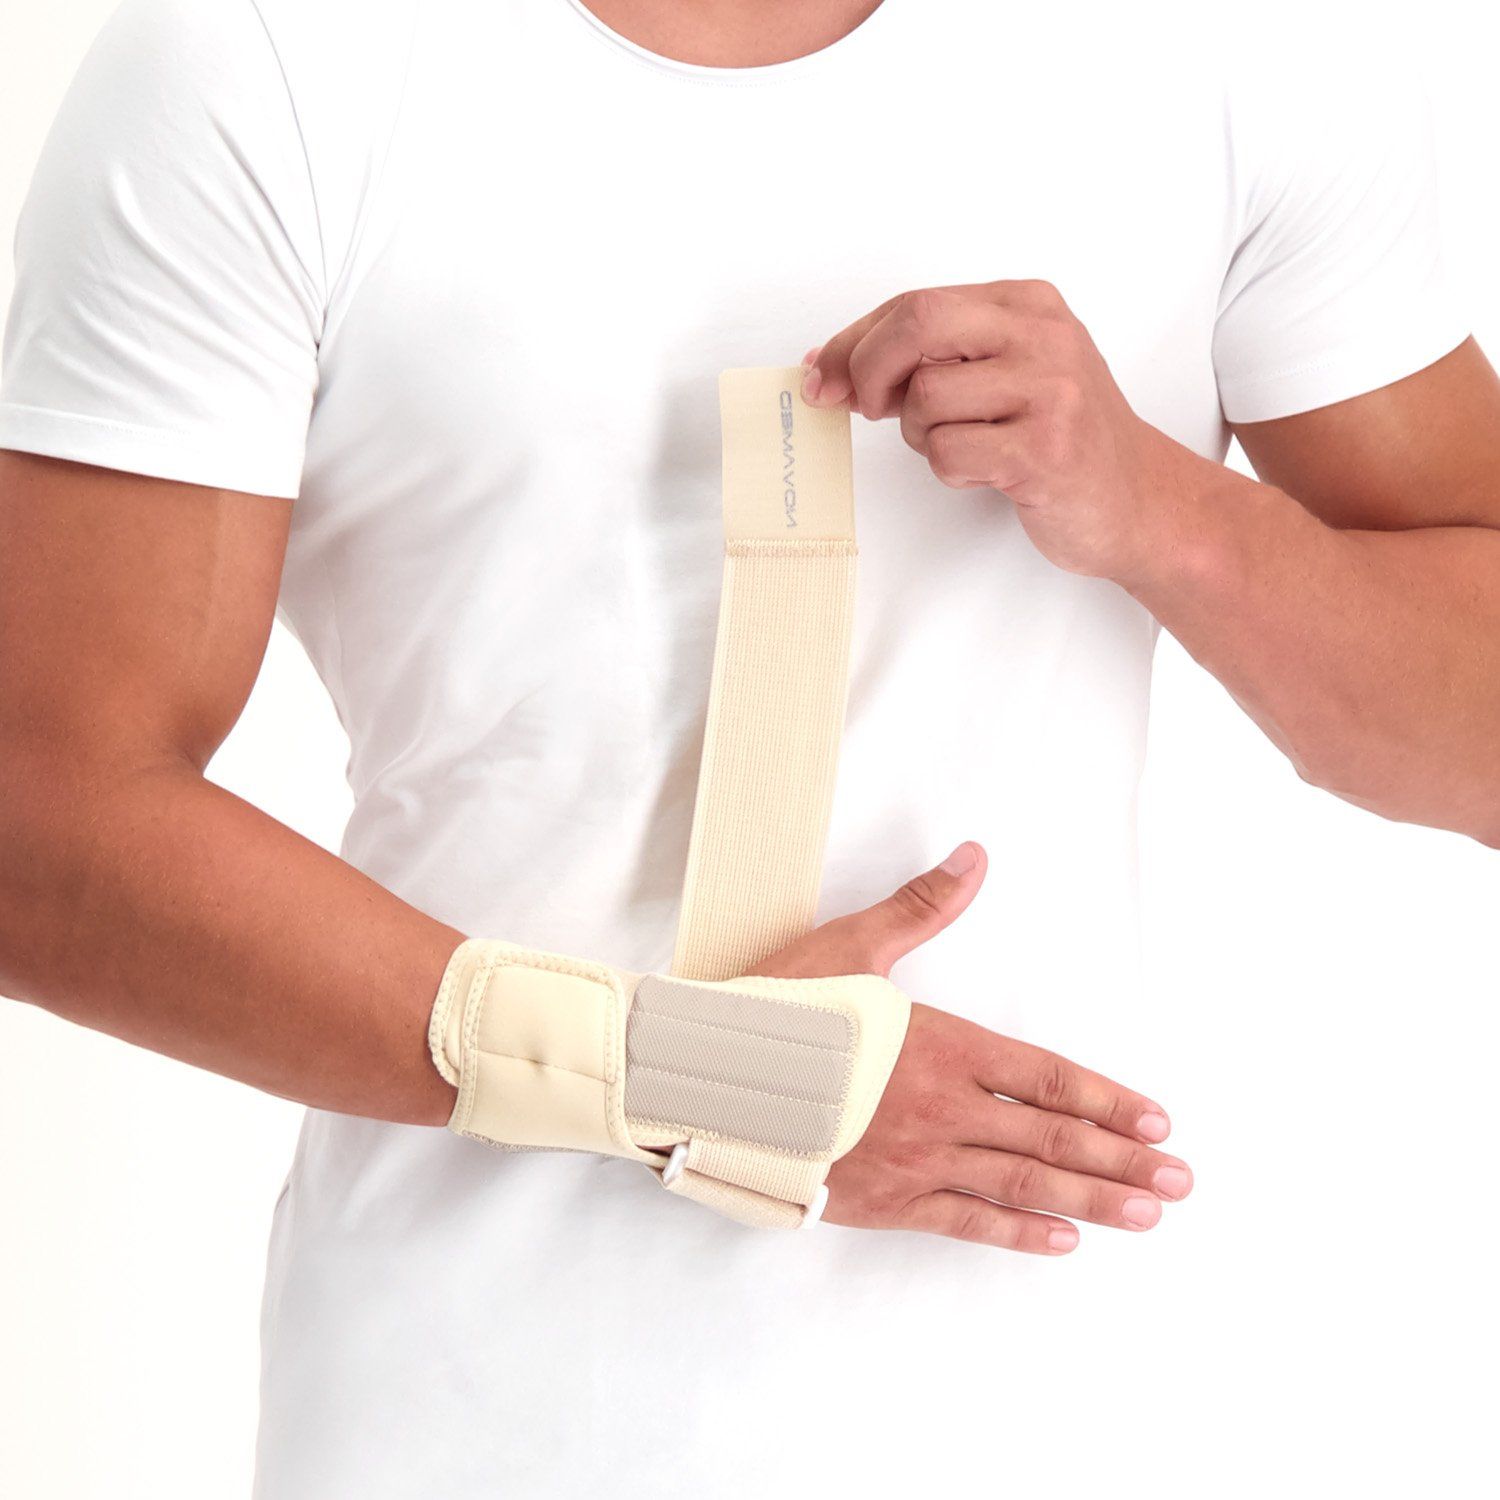 novamed lightweight wrist support beige model